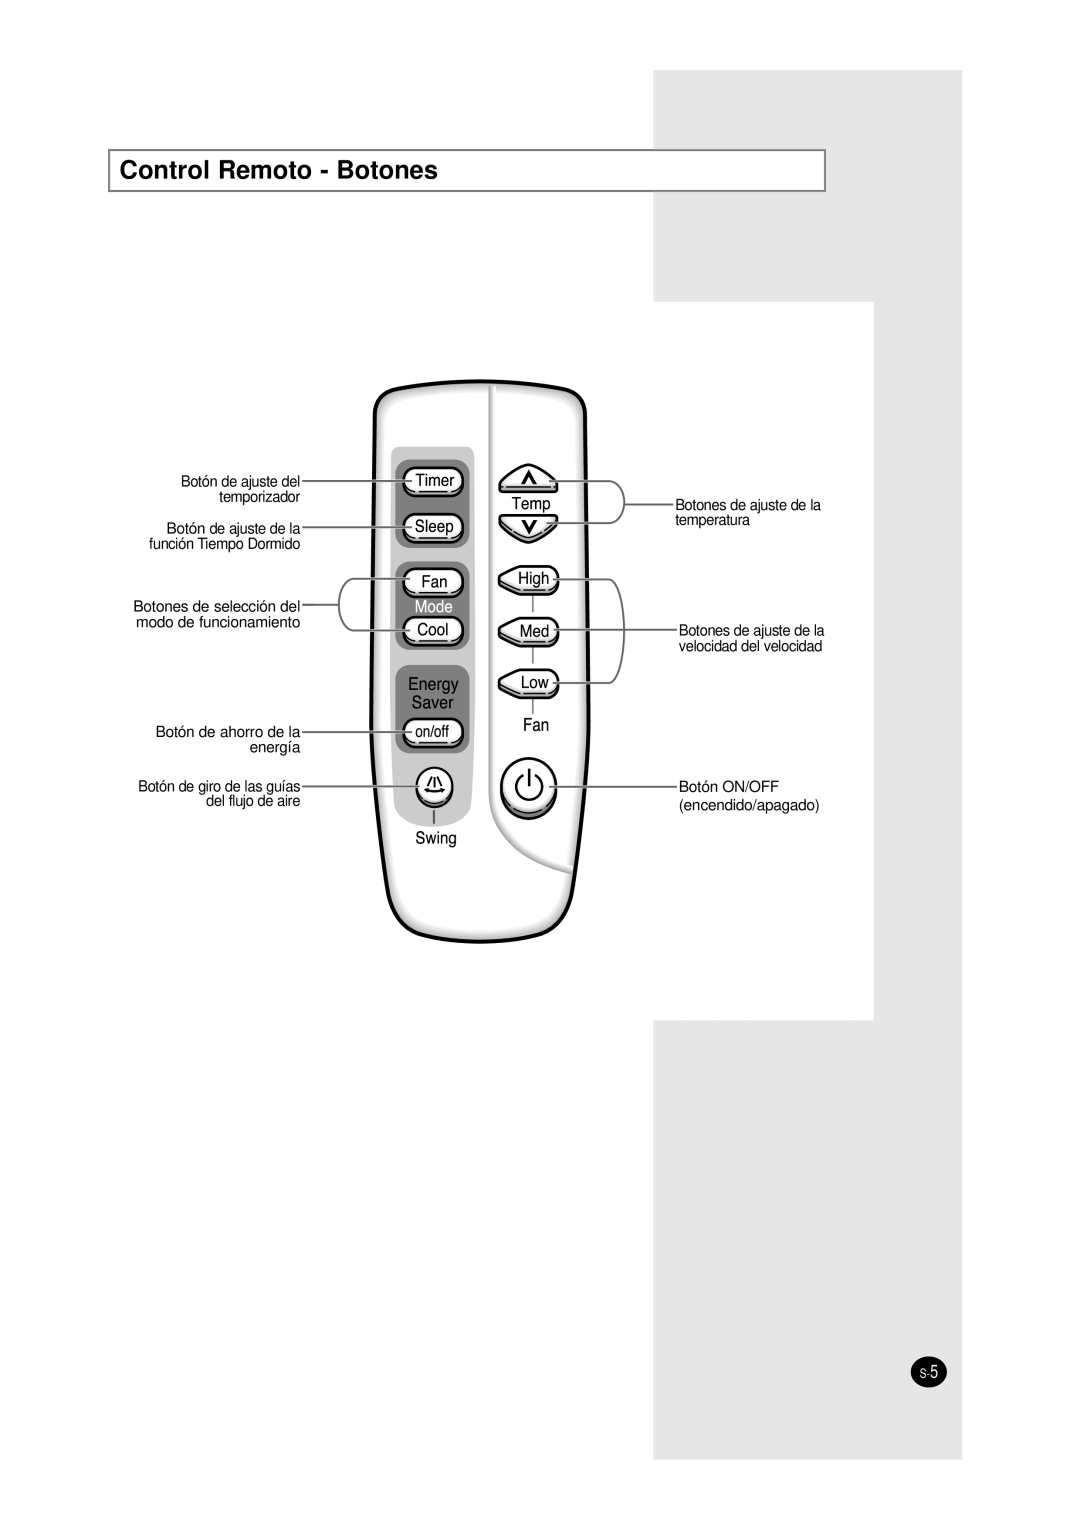 Samsung AW0690A Control Remoto - Botones, Botón de ajuste del temporizador, Botón de ajuste de la función Tiempo Dormido 